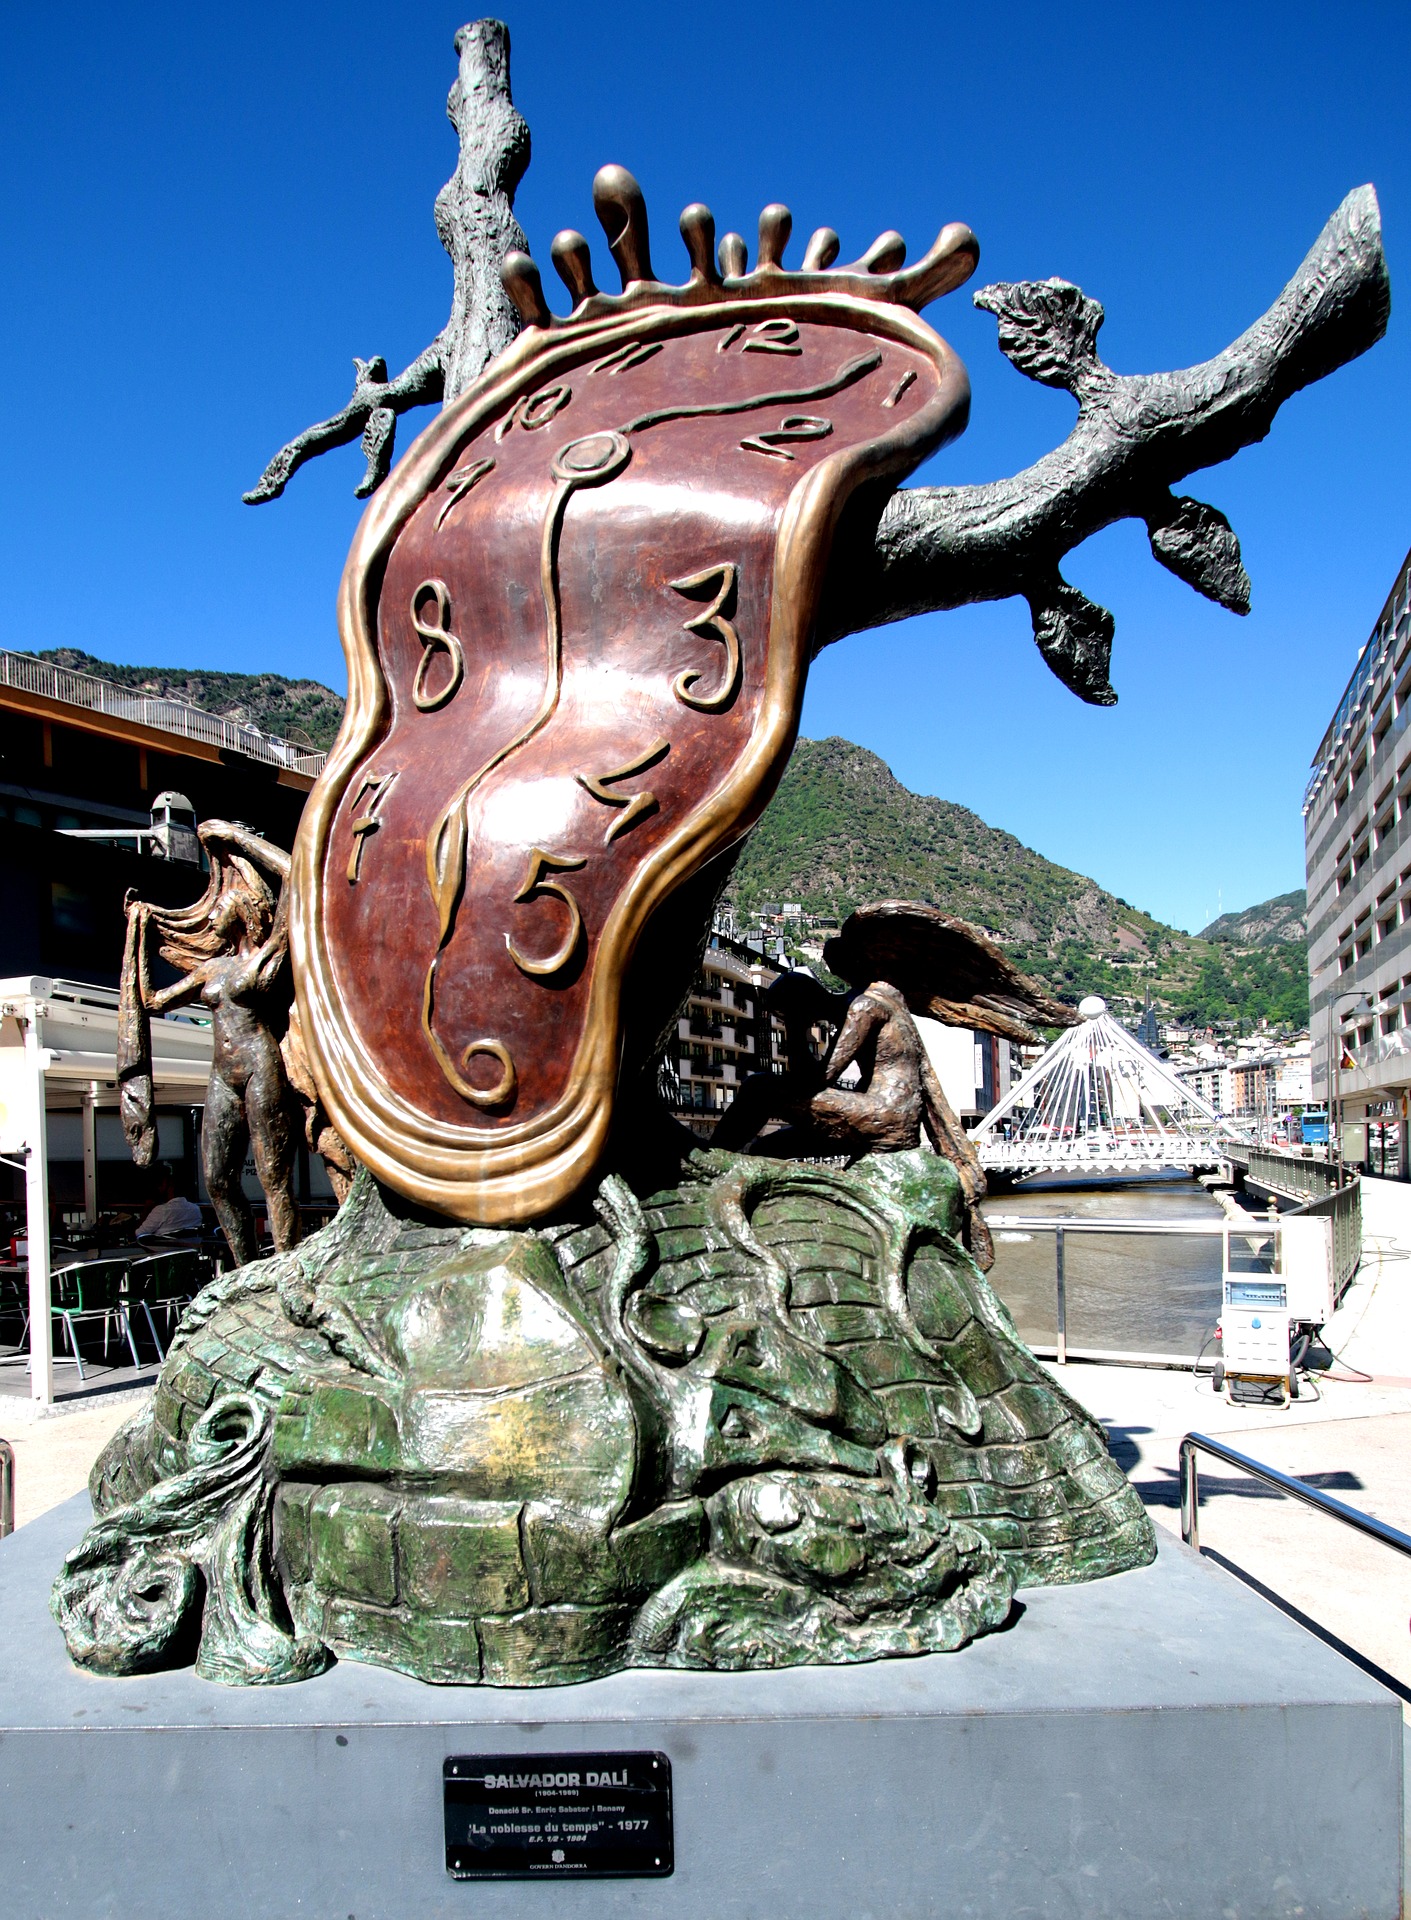 Andorra Salvador Dali Clock